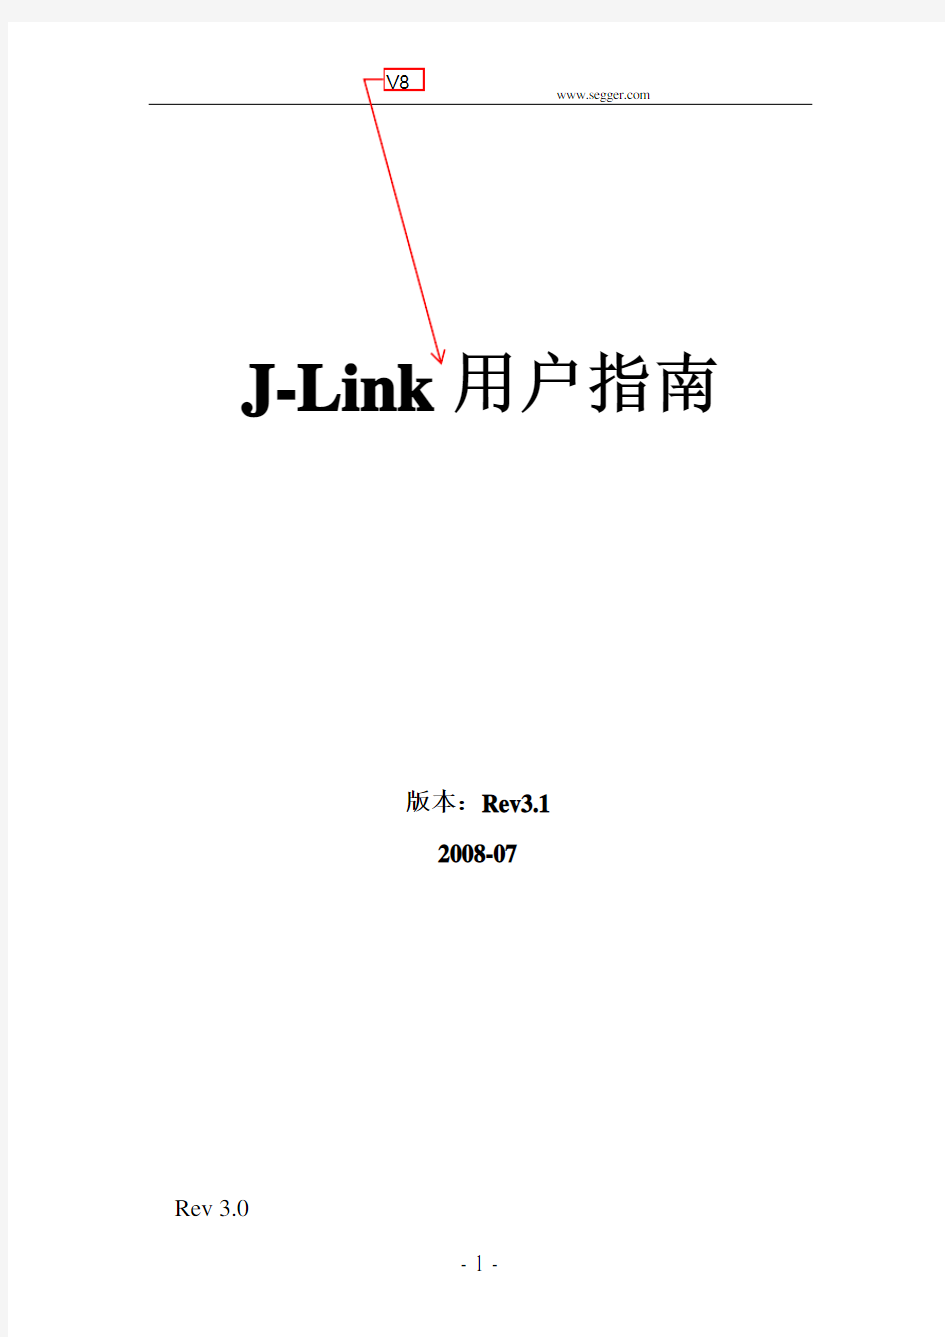 J-Link用户手册_V3.0